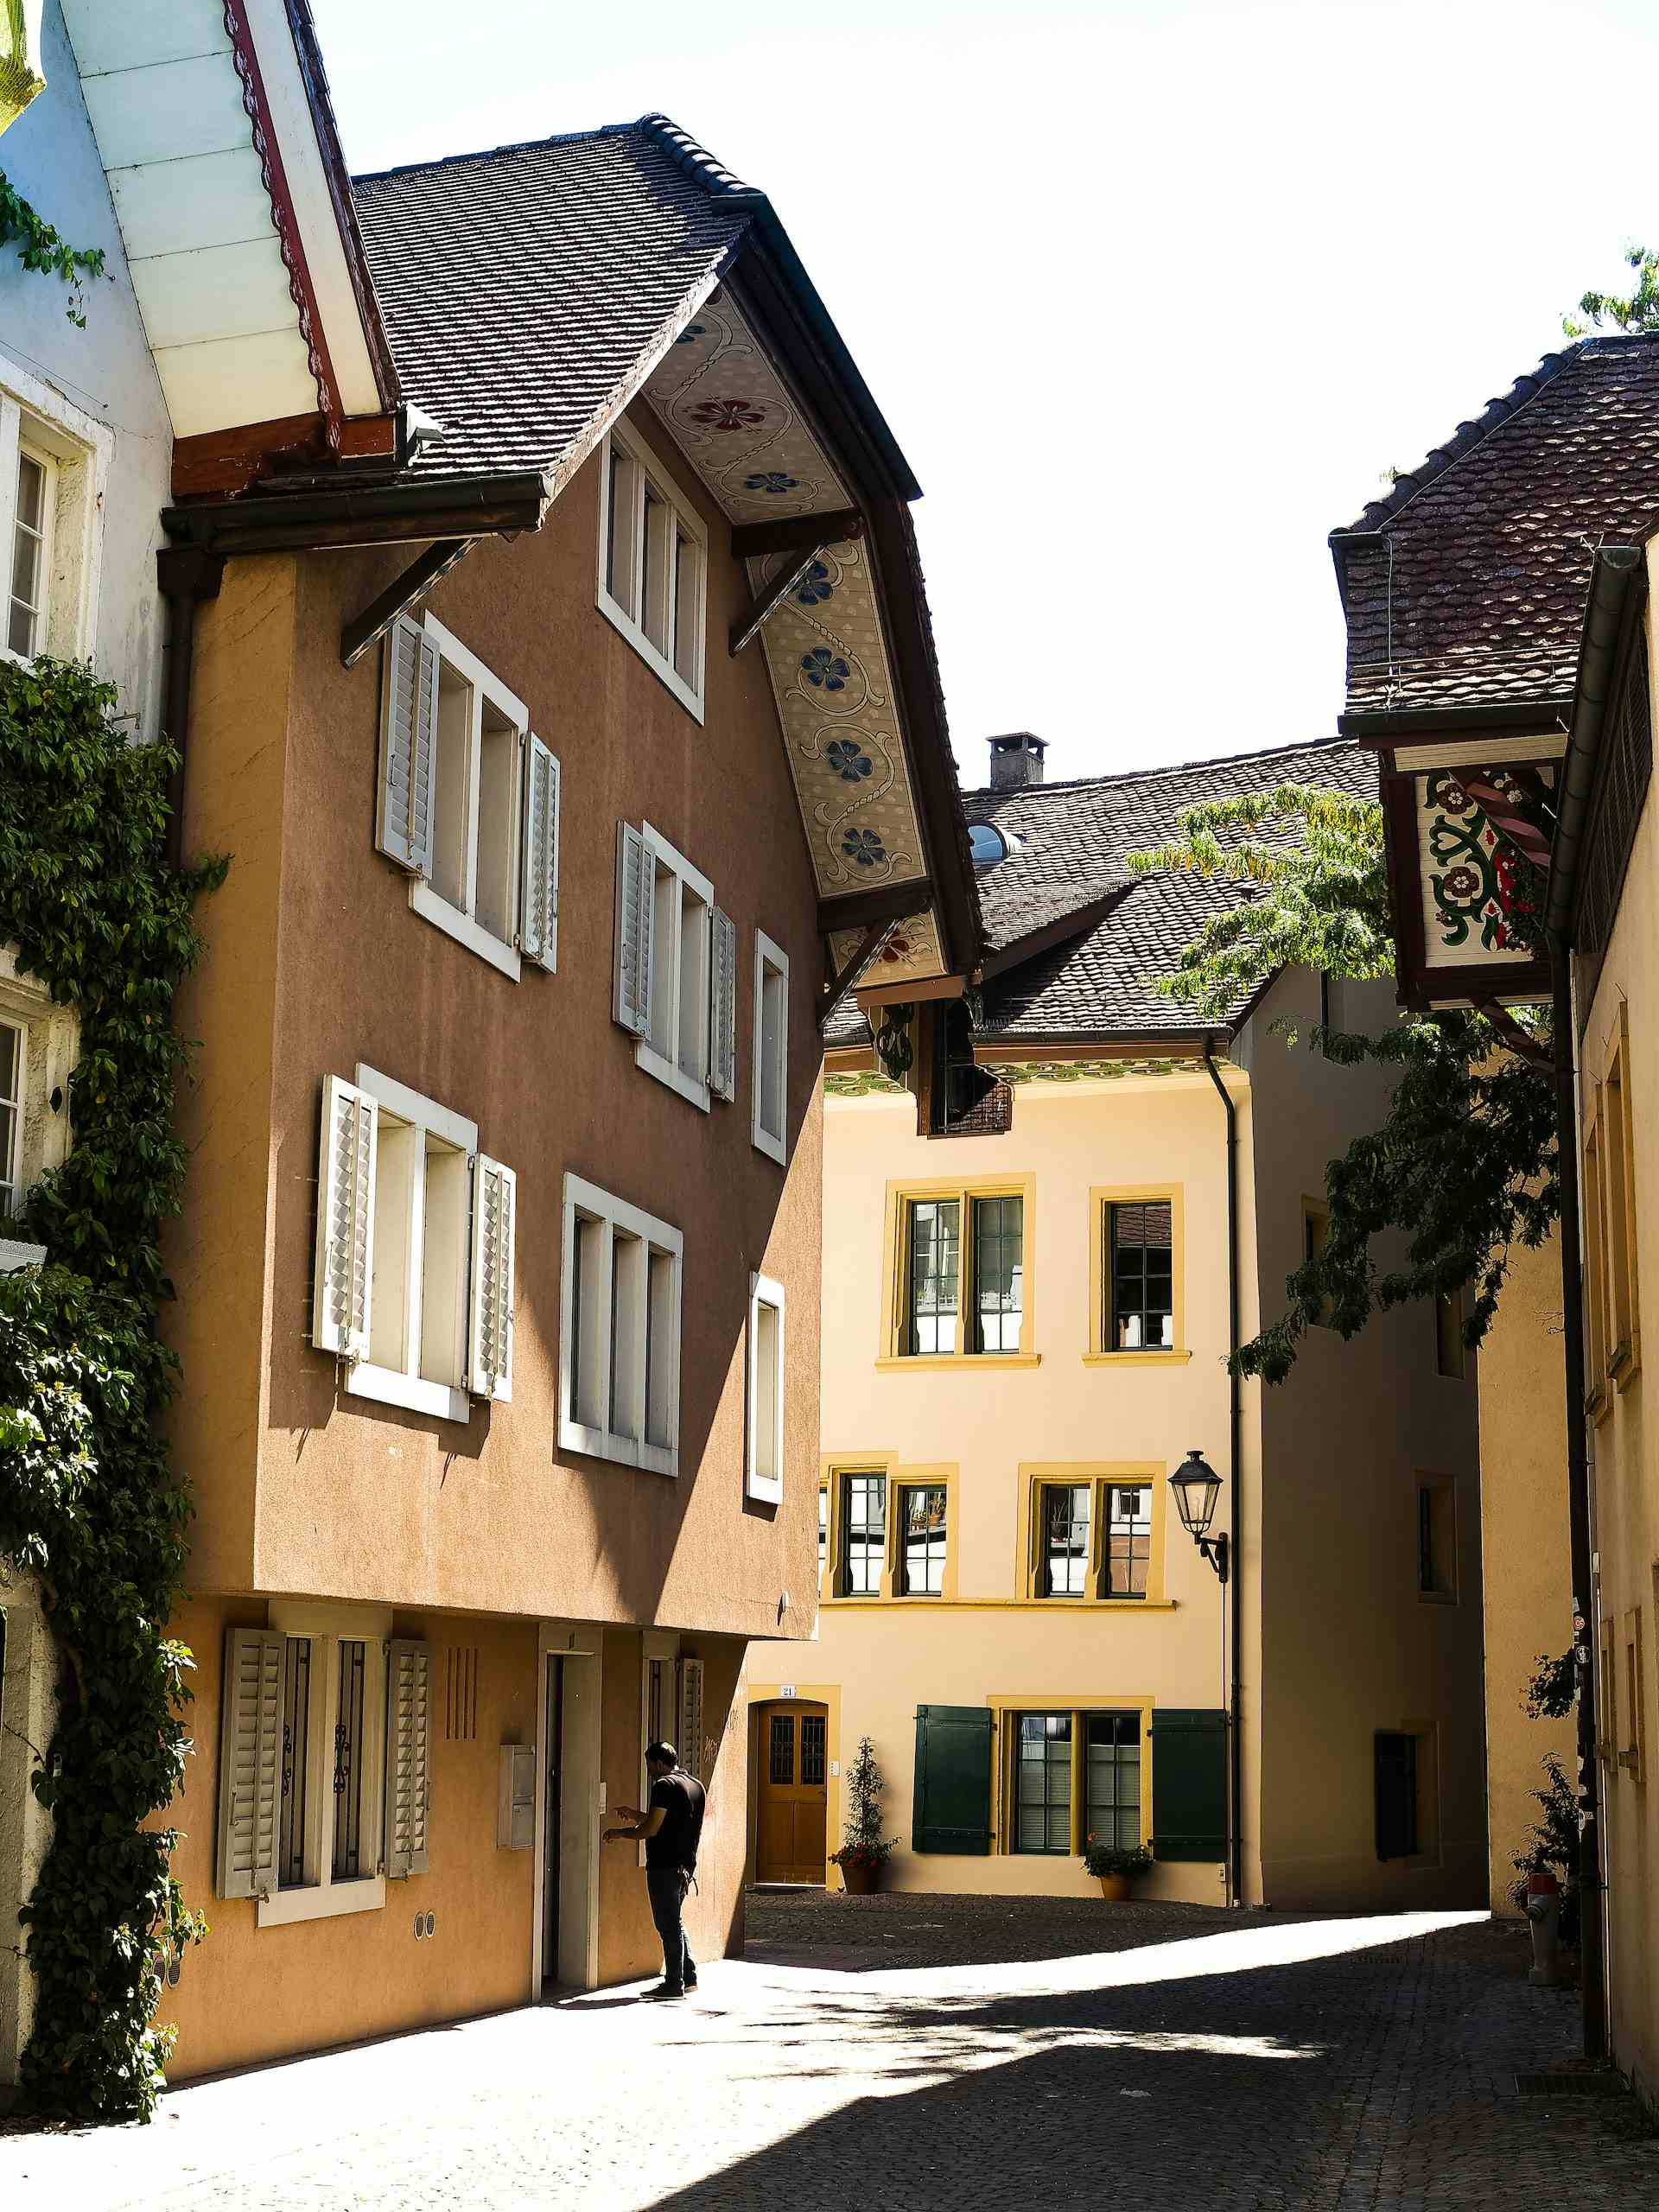 Binzenhof, producteur à Aarau canton de Argovie en Suisse